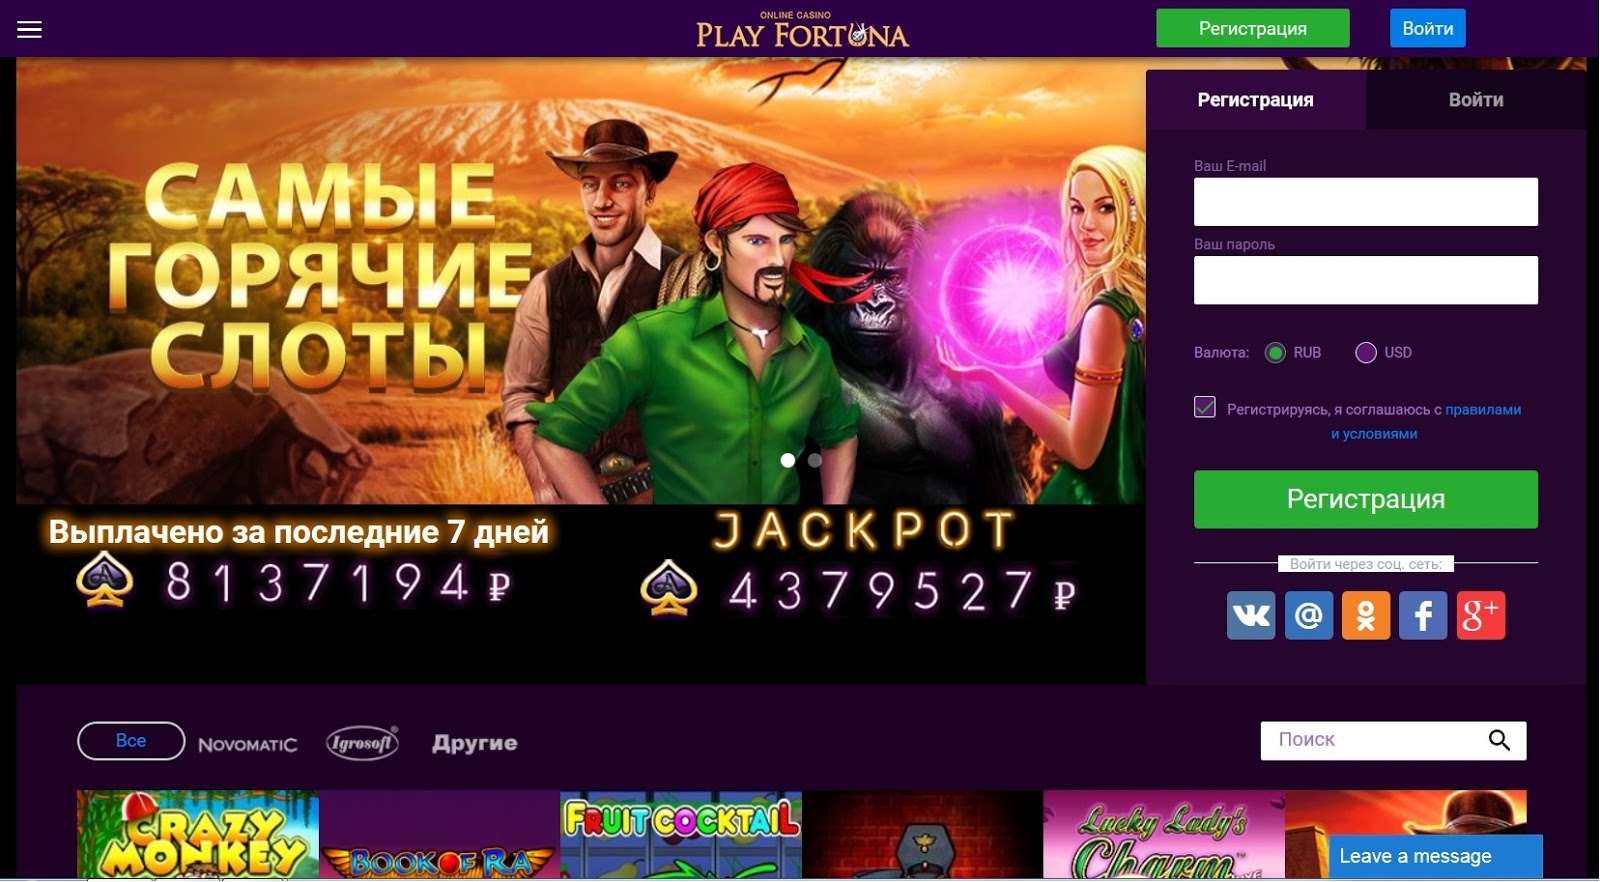 Онлайн казино play fortuna официальный сайт вход игровые автоматы игрософт на компьютер